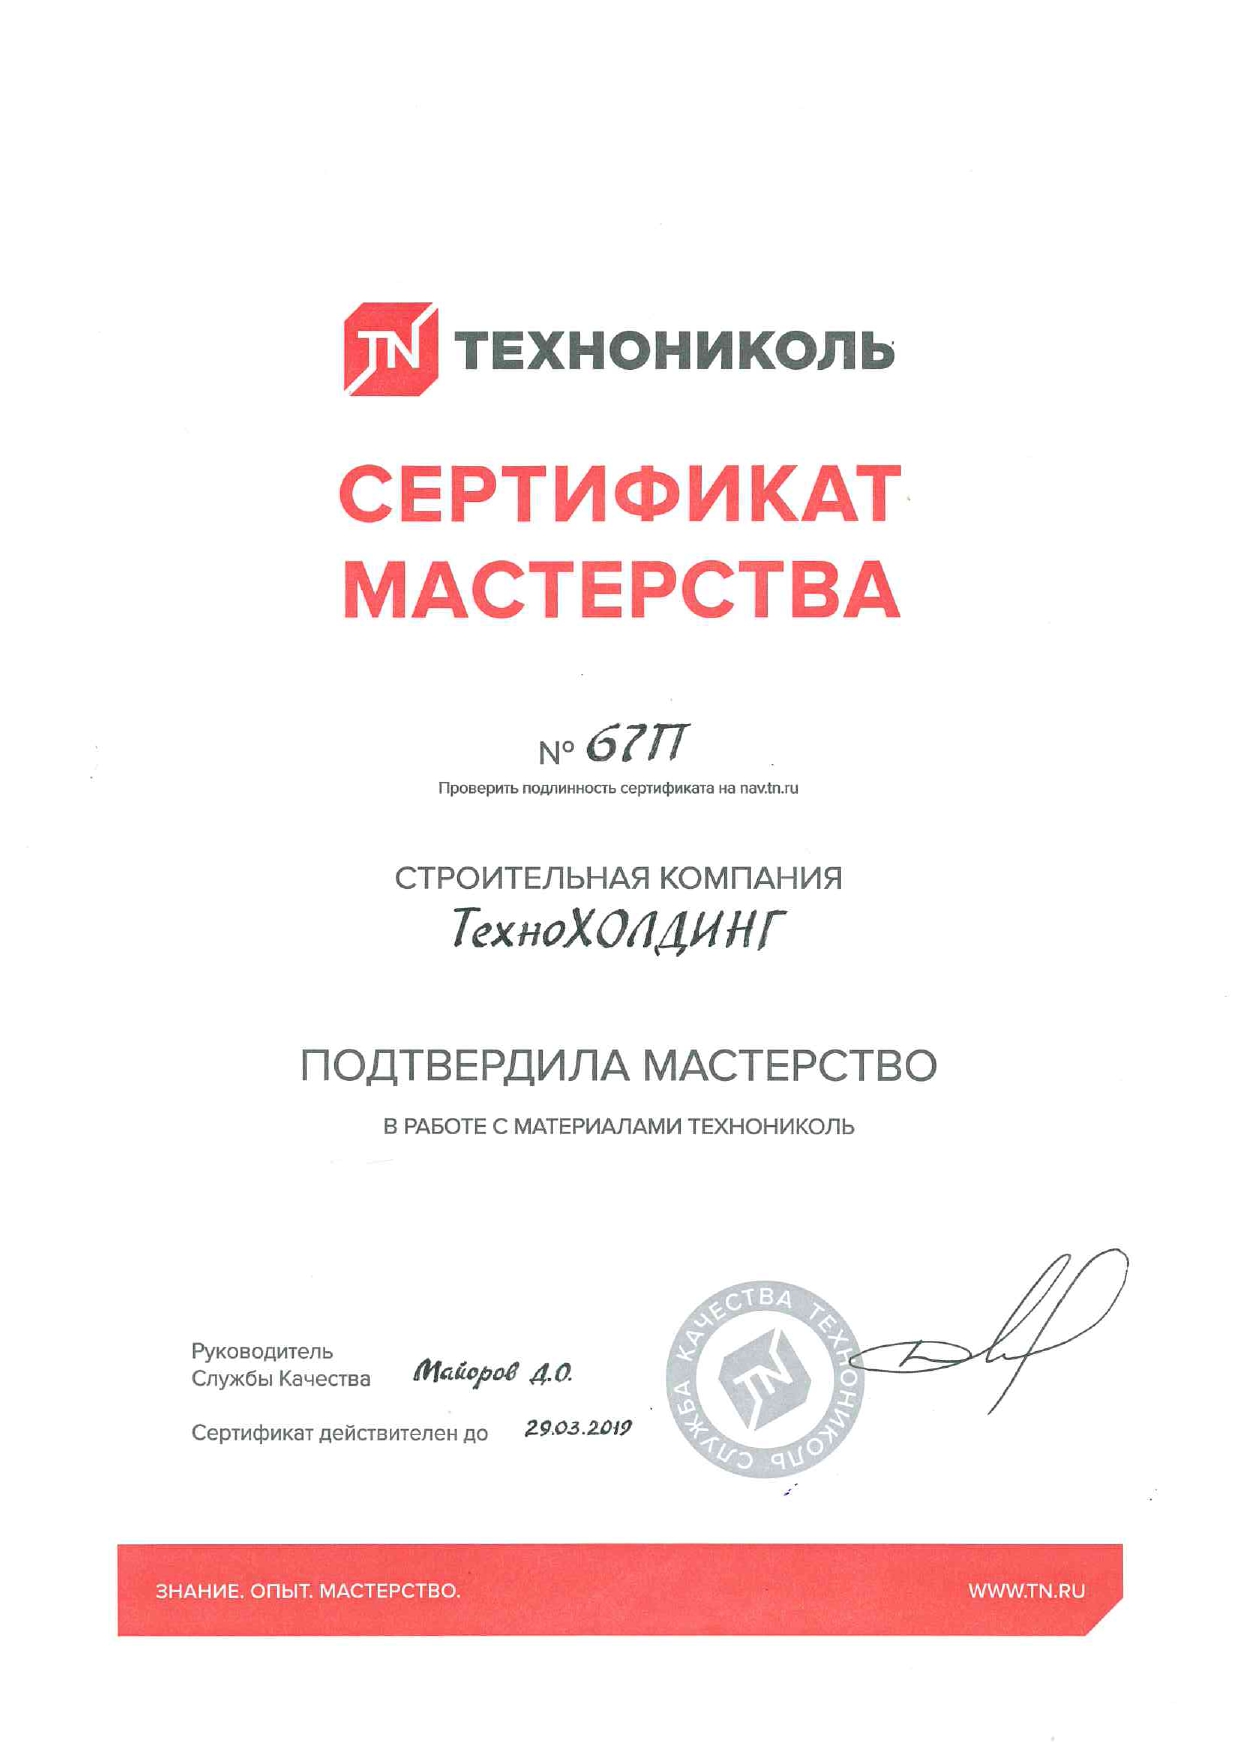 Сертификат мастерства "ТЕХНОНИКОЛЬ"